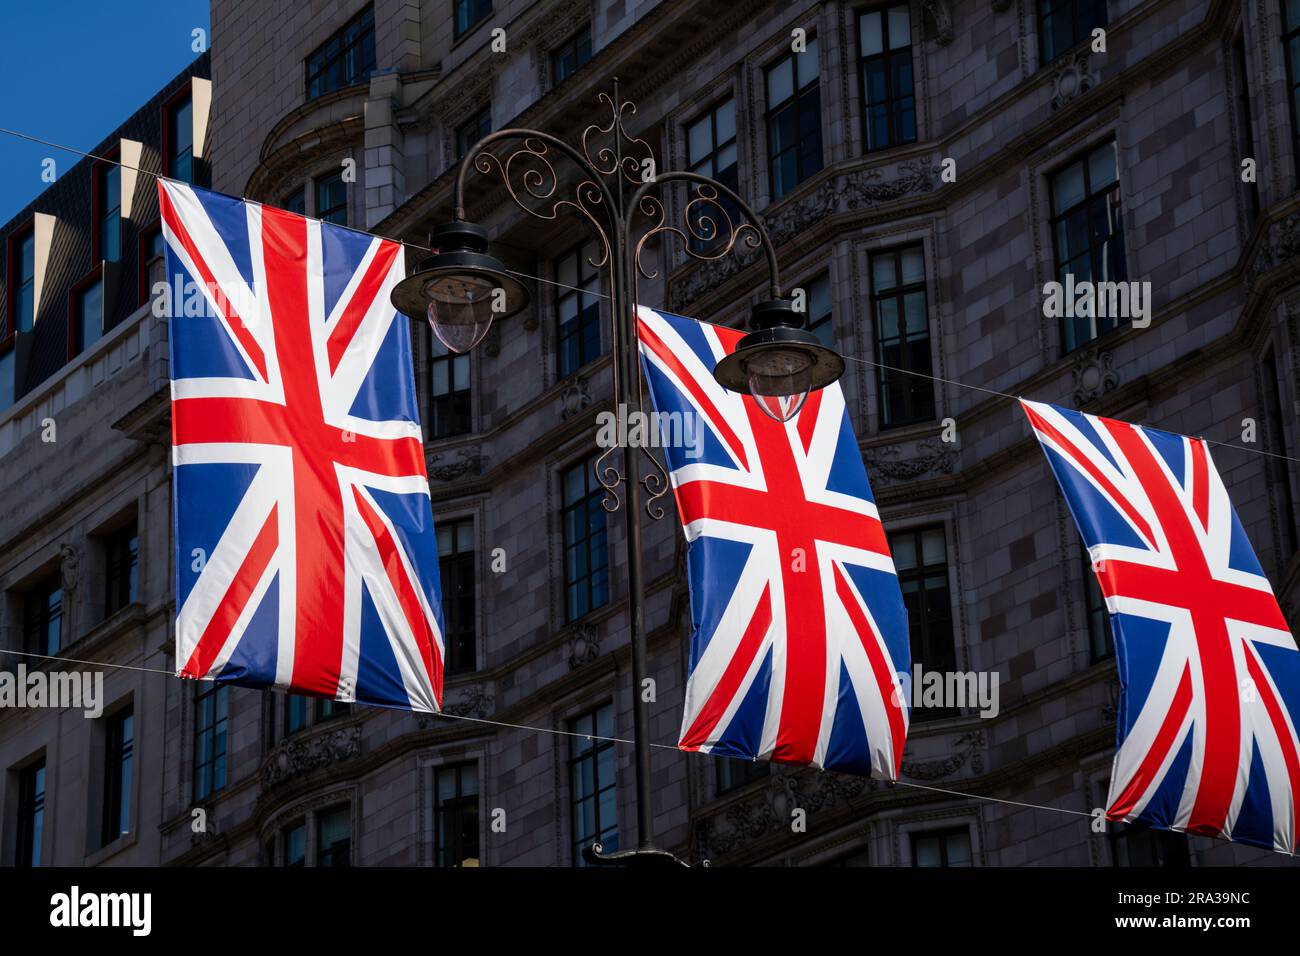 Die Union Jack Flaggen fliegen, hämmern, auf einer belebten Londoner Stadtstraße. Die roten, weißen und blauen britischen Flaggen sind ein Symbol der Freiheit und des Stolzes der Menschen. Stockfoto